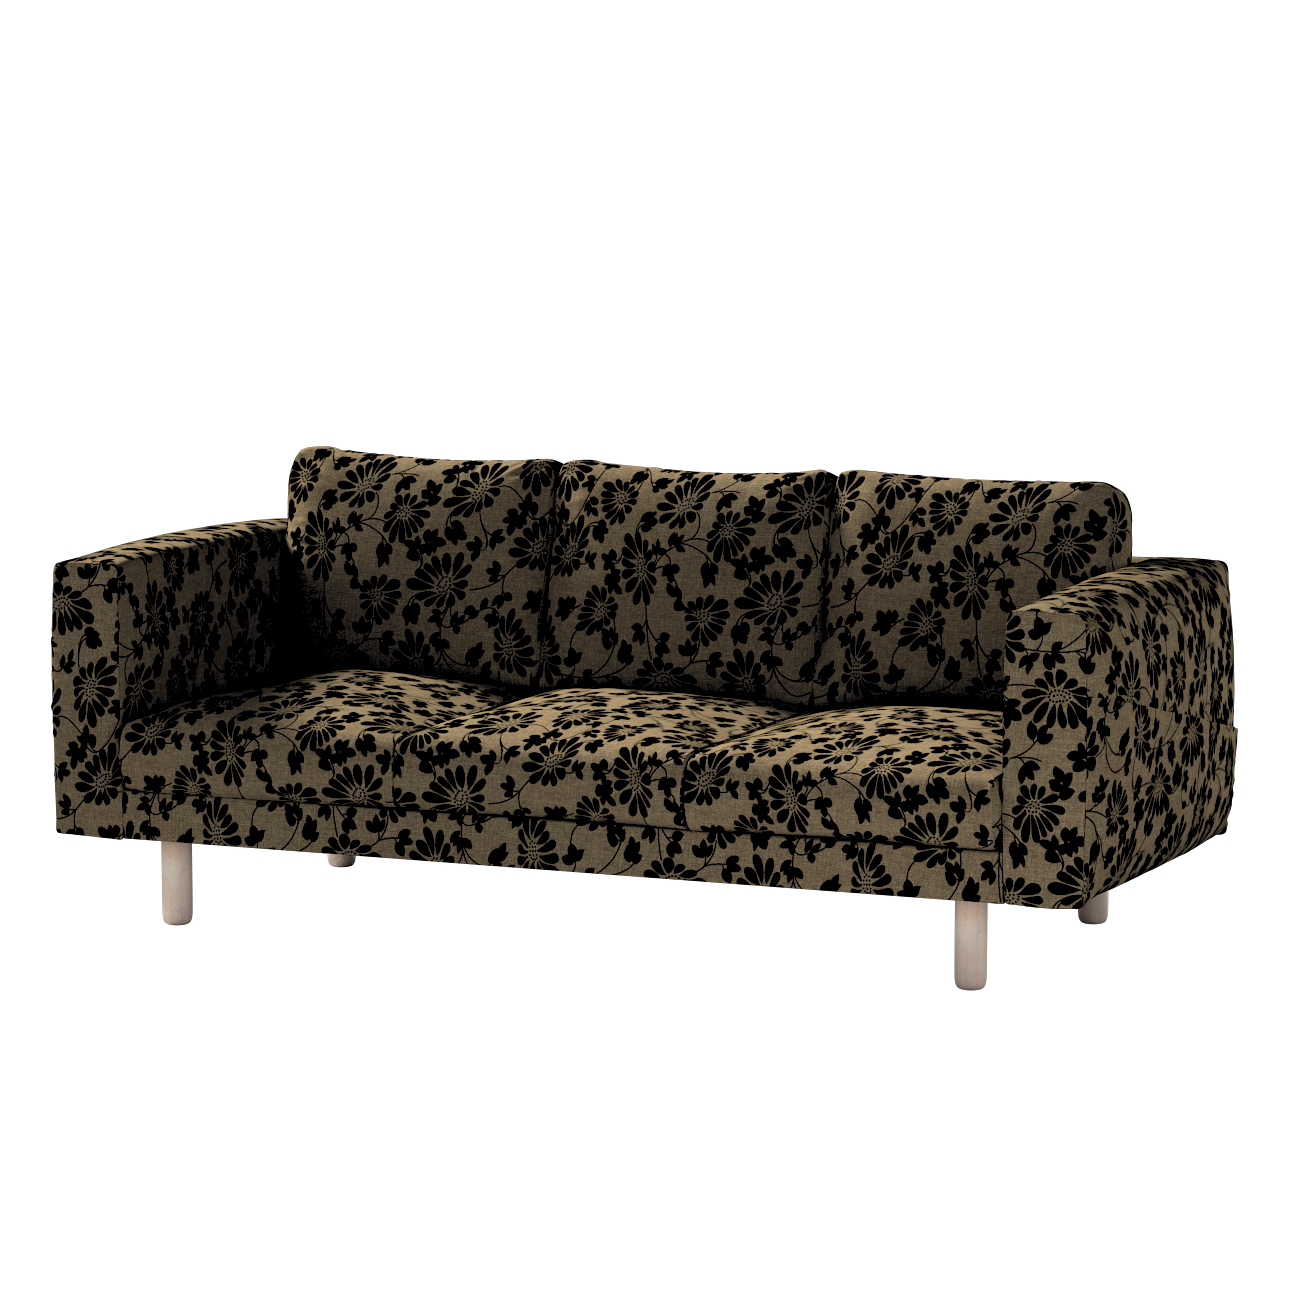 Bezug für Norsborg 3-Sitzer Sofa, beige-schwarz, Norsborg 3-Sitzer Sofabezu günstig online kaufen